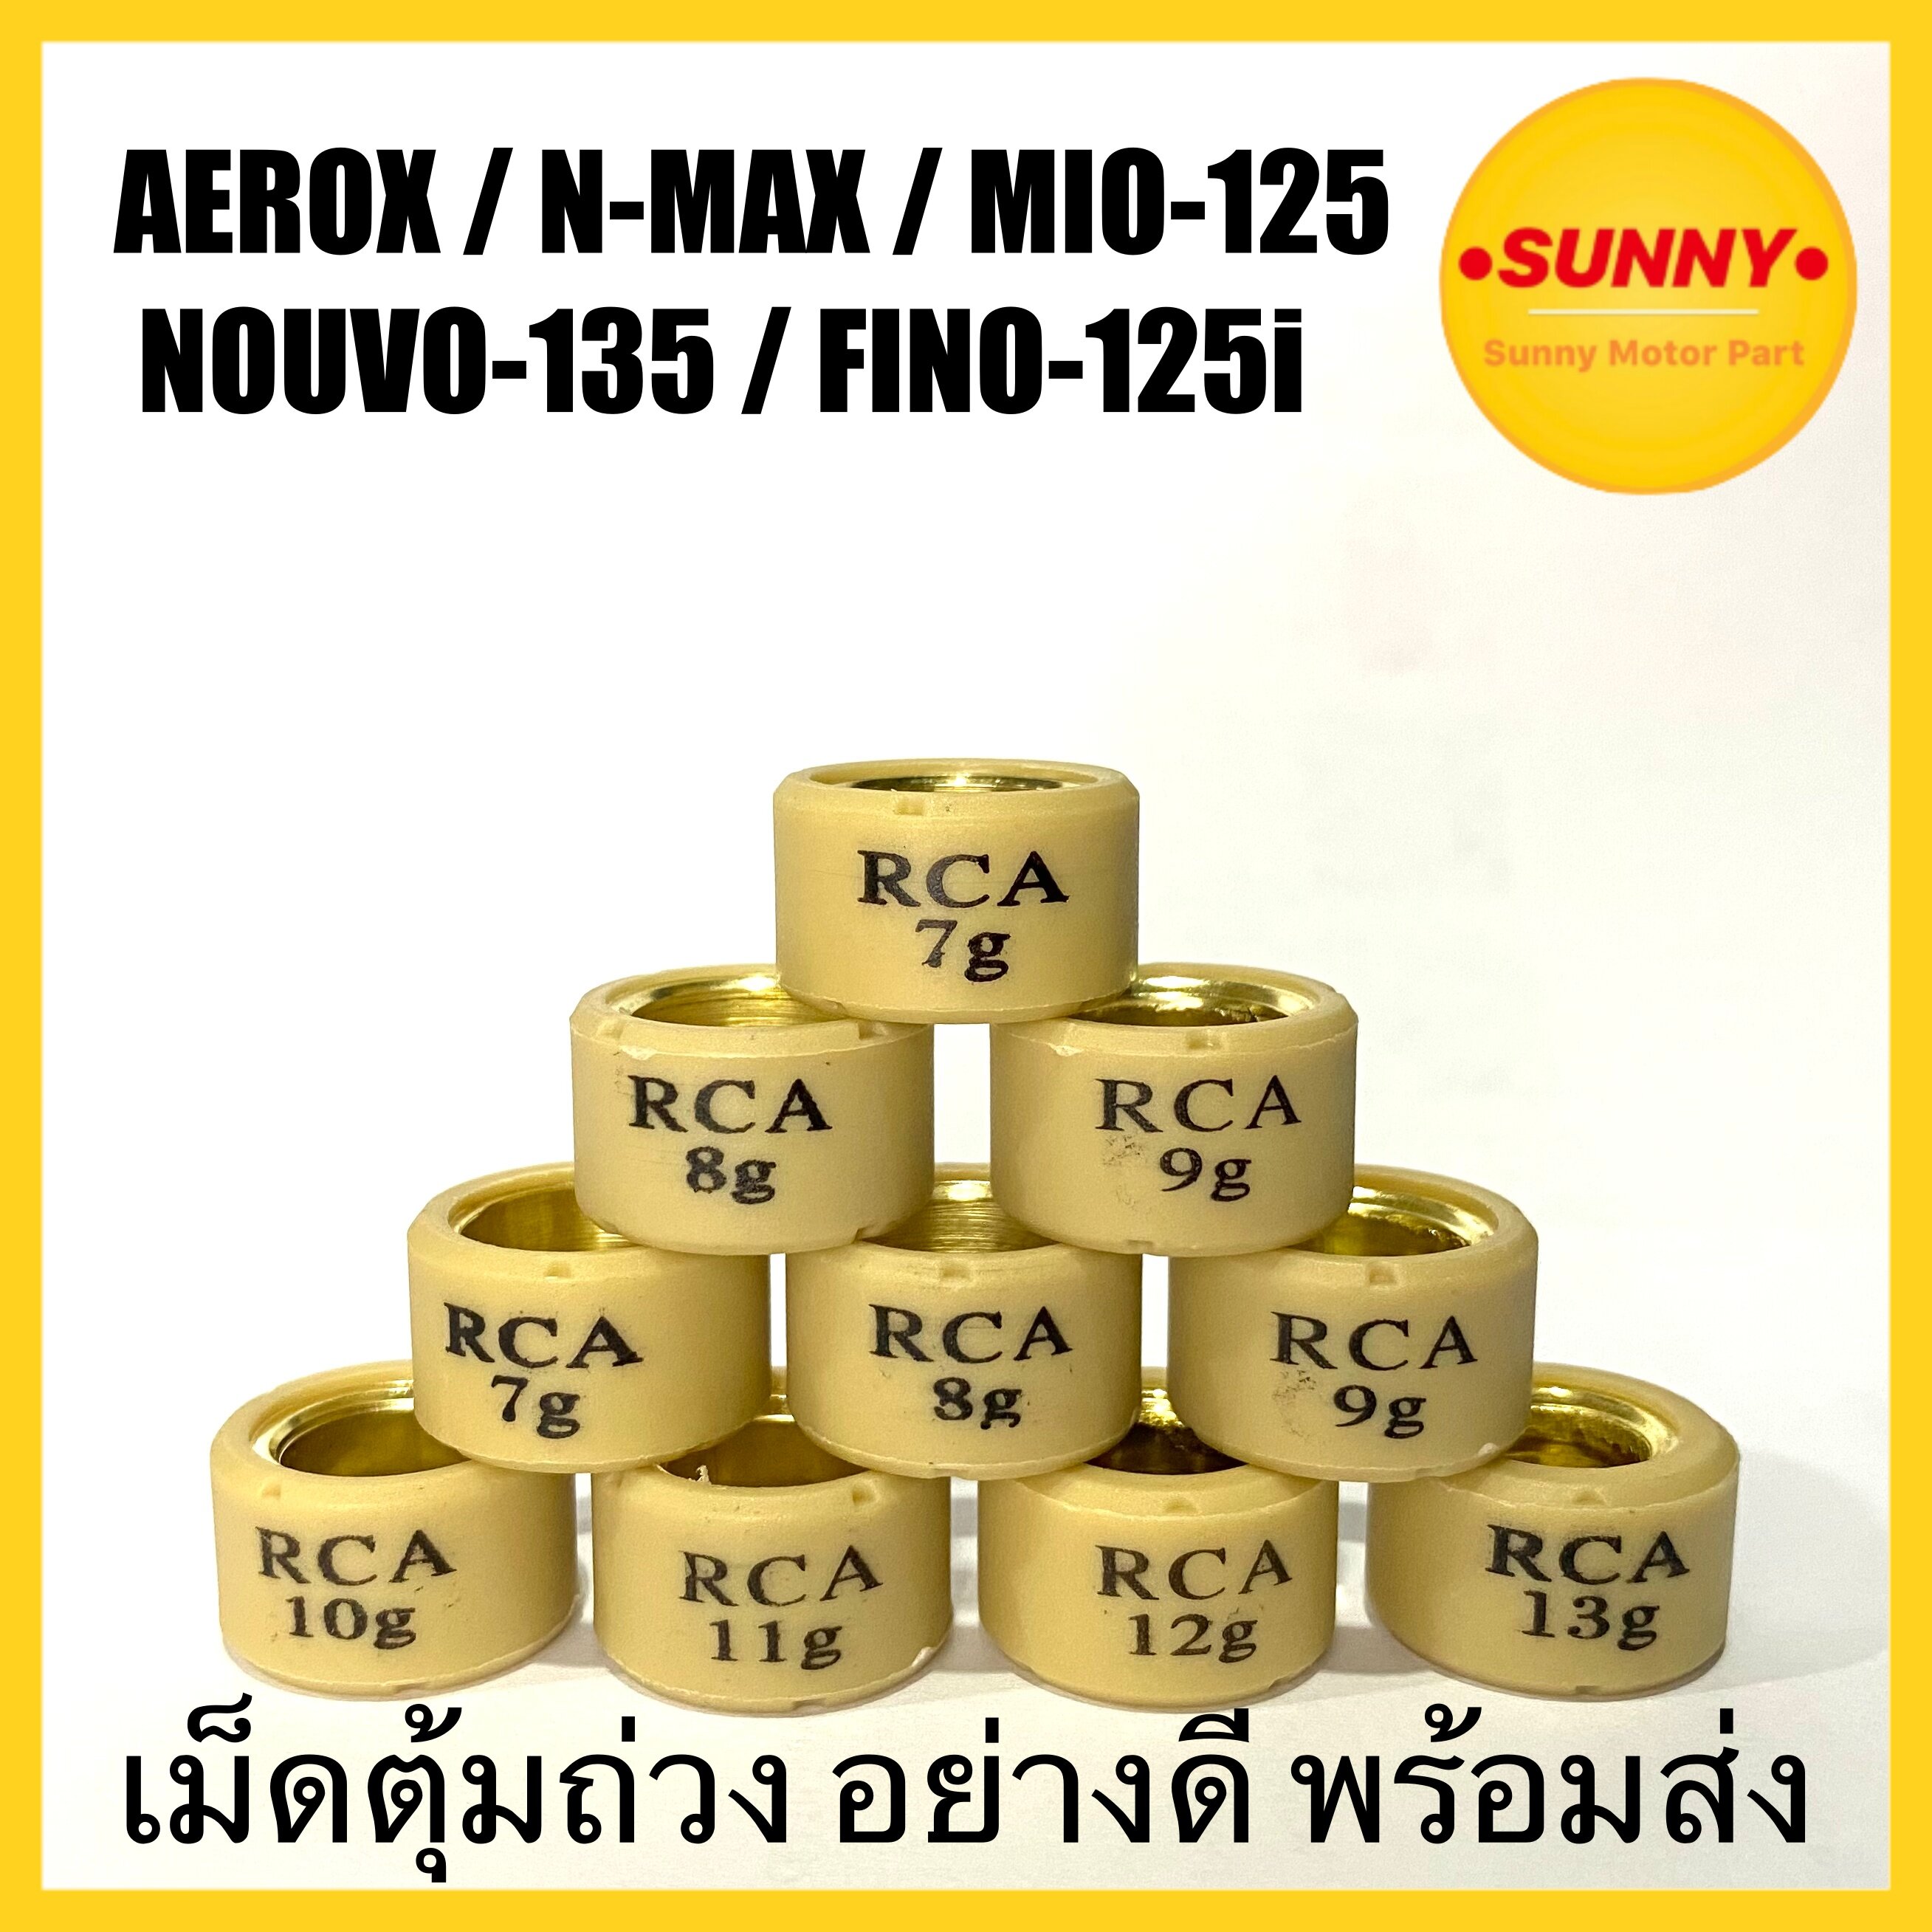 เม็ดตุ้มถ่วง อย่างดี เบอร์ (7-13) สำหรับ AEROX / NMAX / MIO 125 / NOUVO 135 / FINO 125i พร้อมส่ง มีเก็บเงินปลายทาง